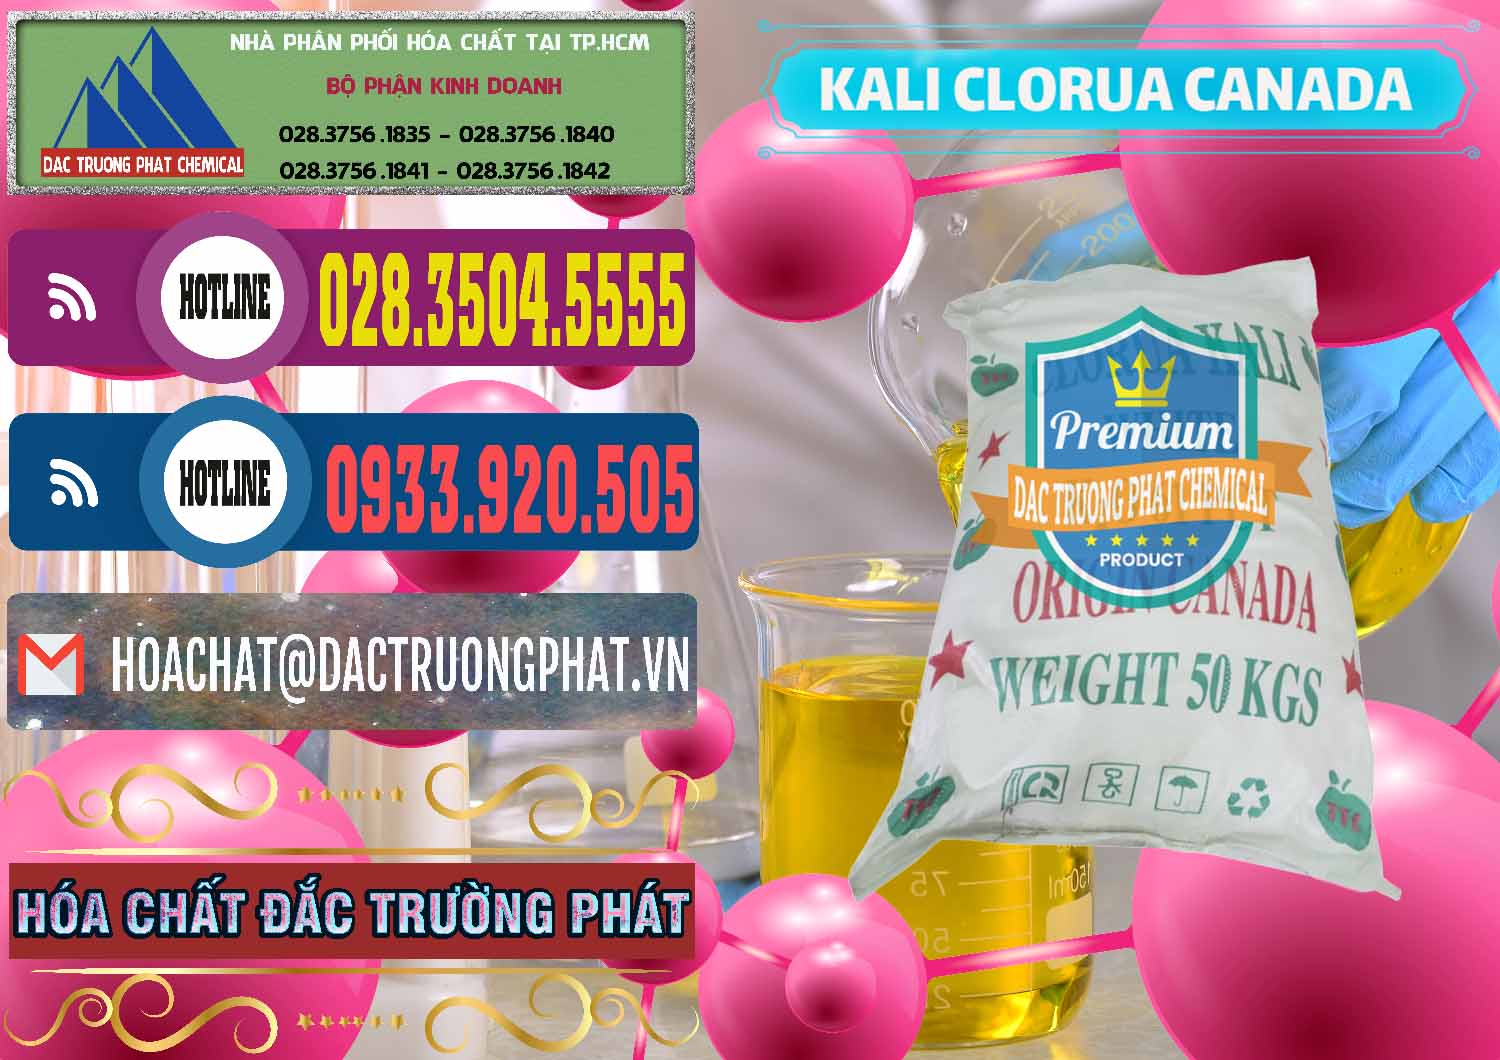 Cty chuyên nhập khẩu & bán KCL – Kali Clorua Trắng Canada - 0437 - Công ty chuyên bán _ cung cấp hóa chất tại TP.HCM - muabanhoachat.com.vn